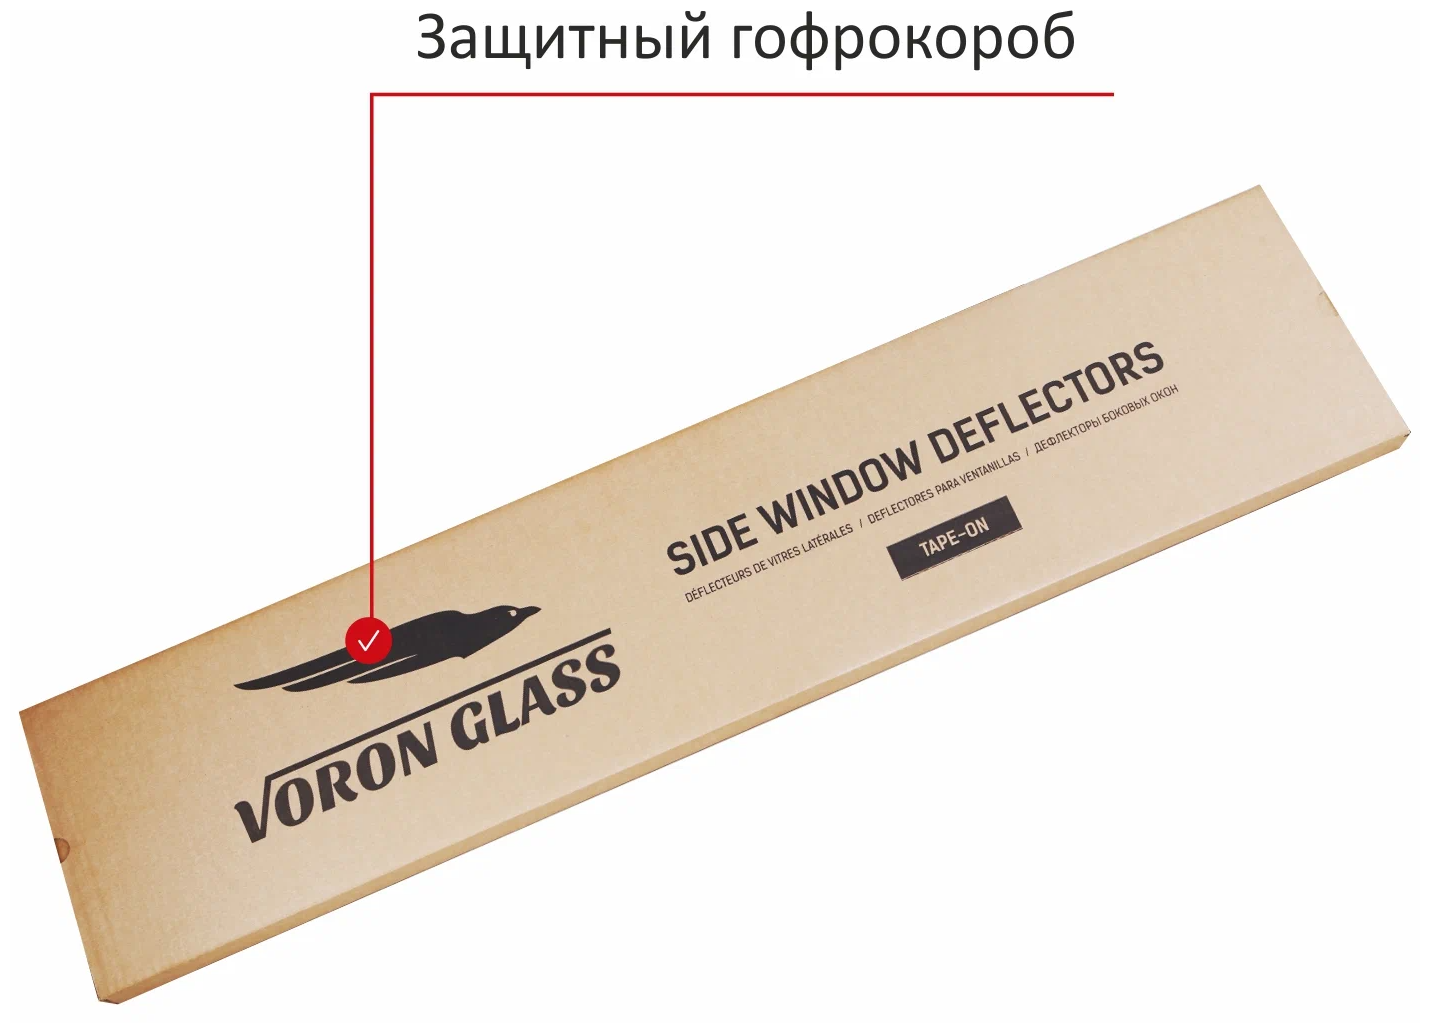 Дефлекторы Voron Glass - фото №11